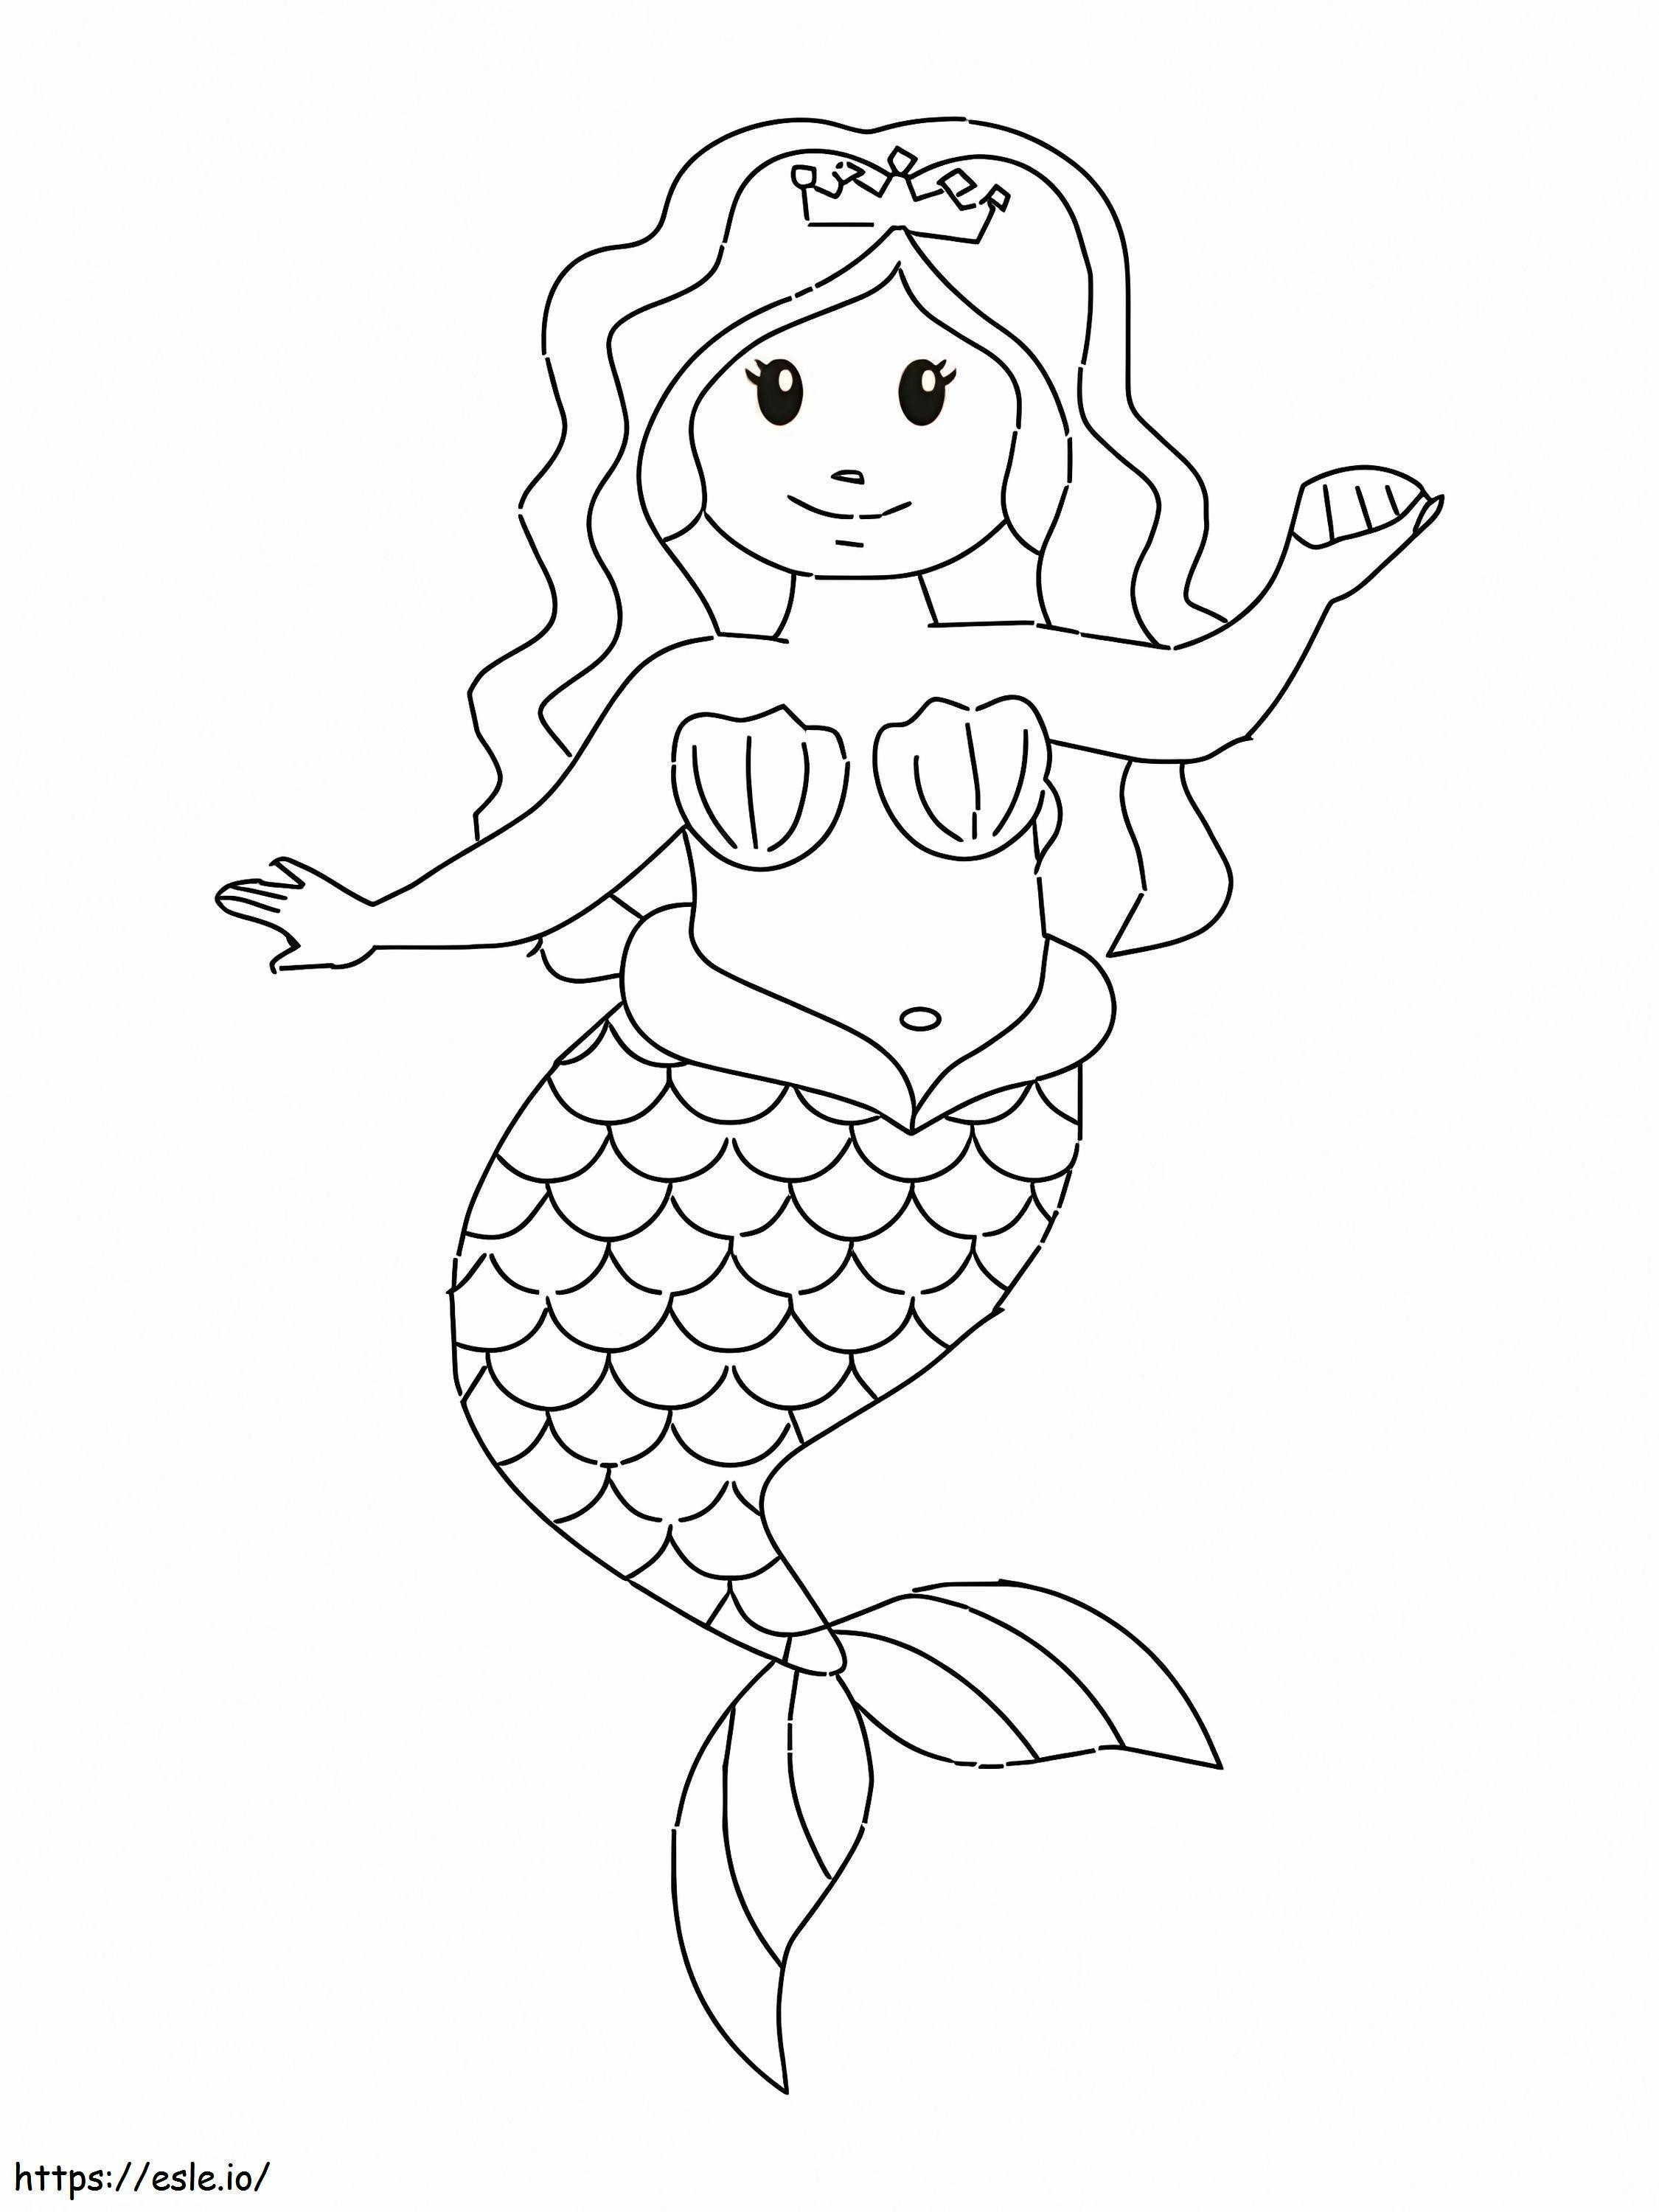 Meerjungfrau mit einer Muschel ausmalbilder